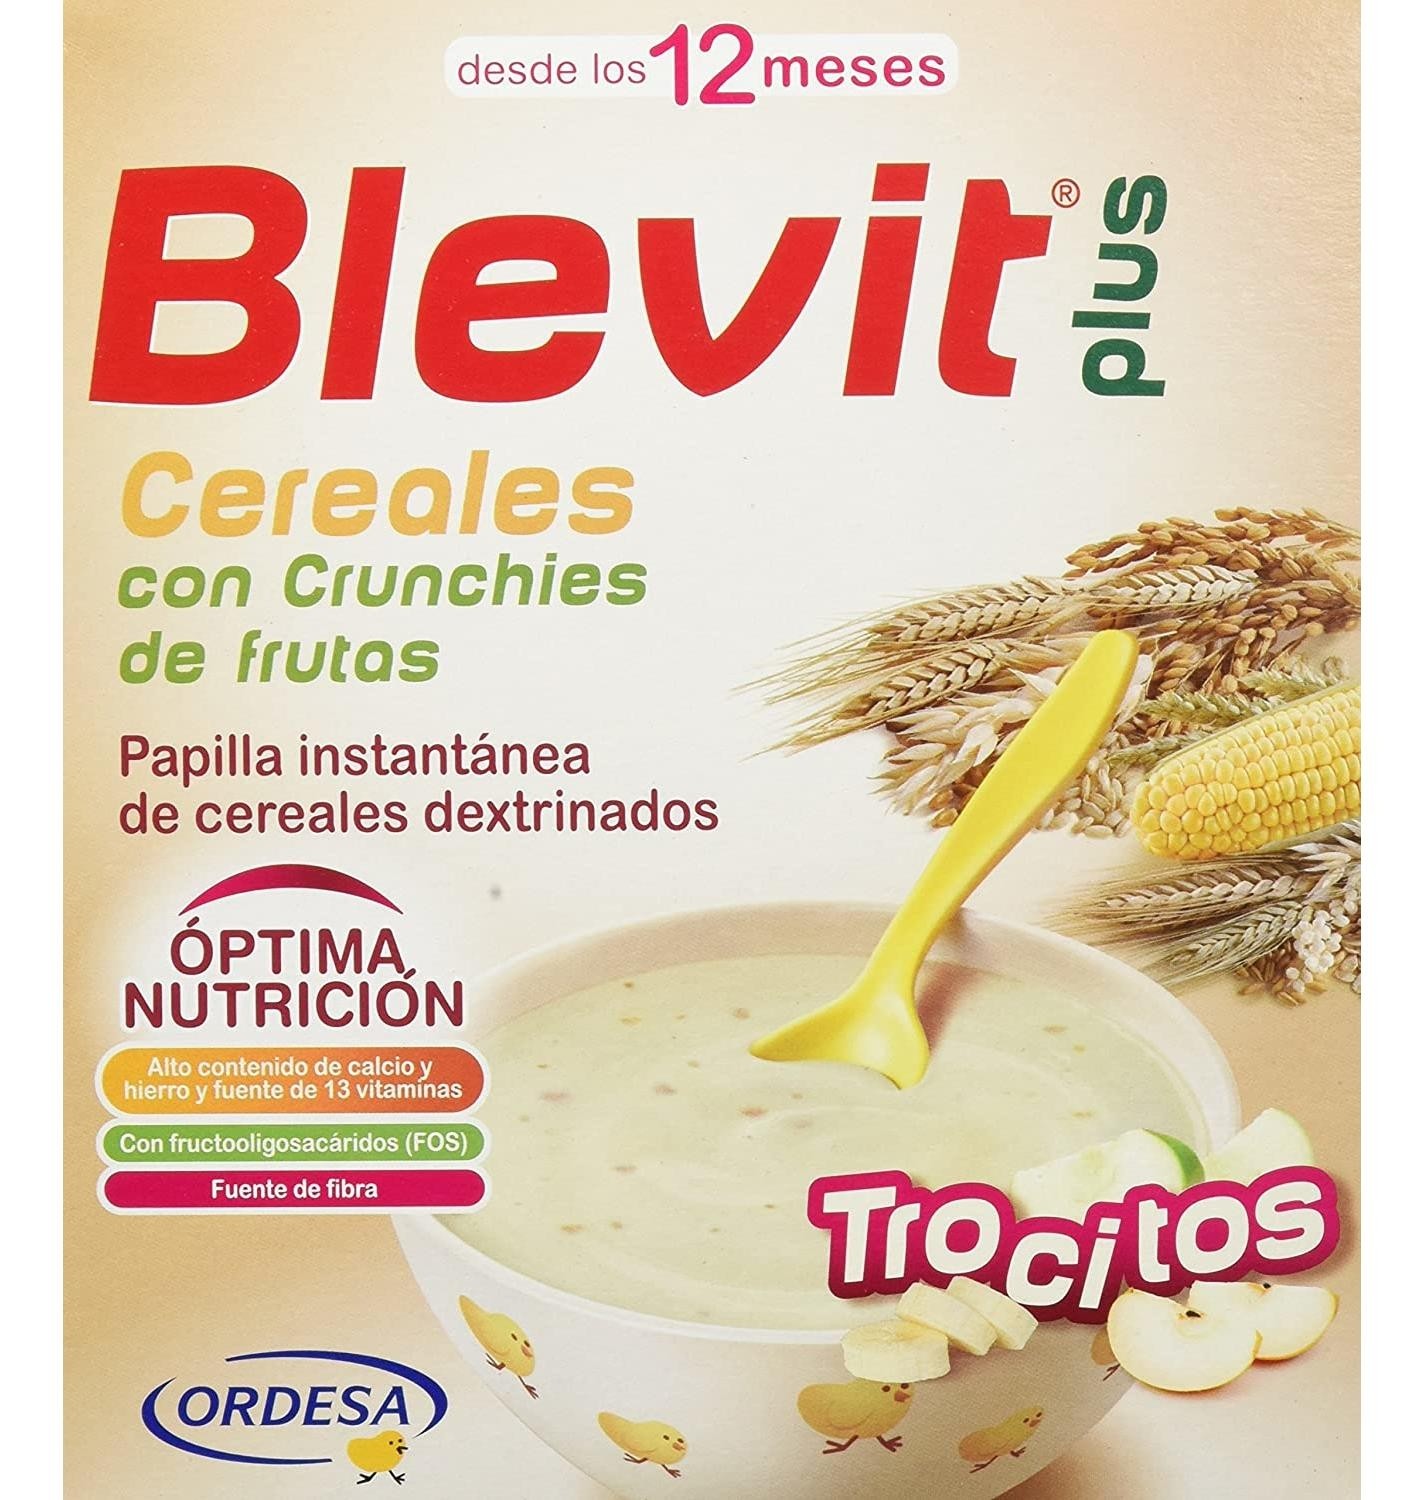 Blevit Plus ColaCao - Papilla de Cereales para Bebé con Calcio